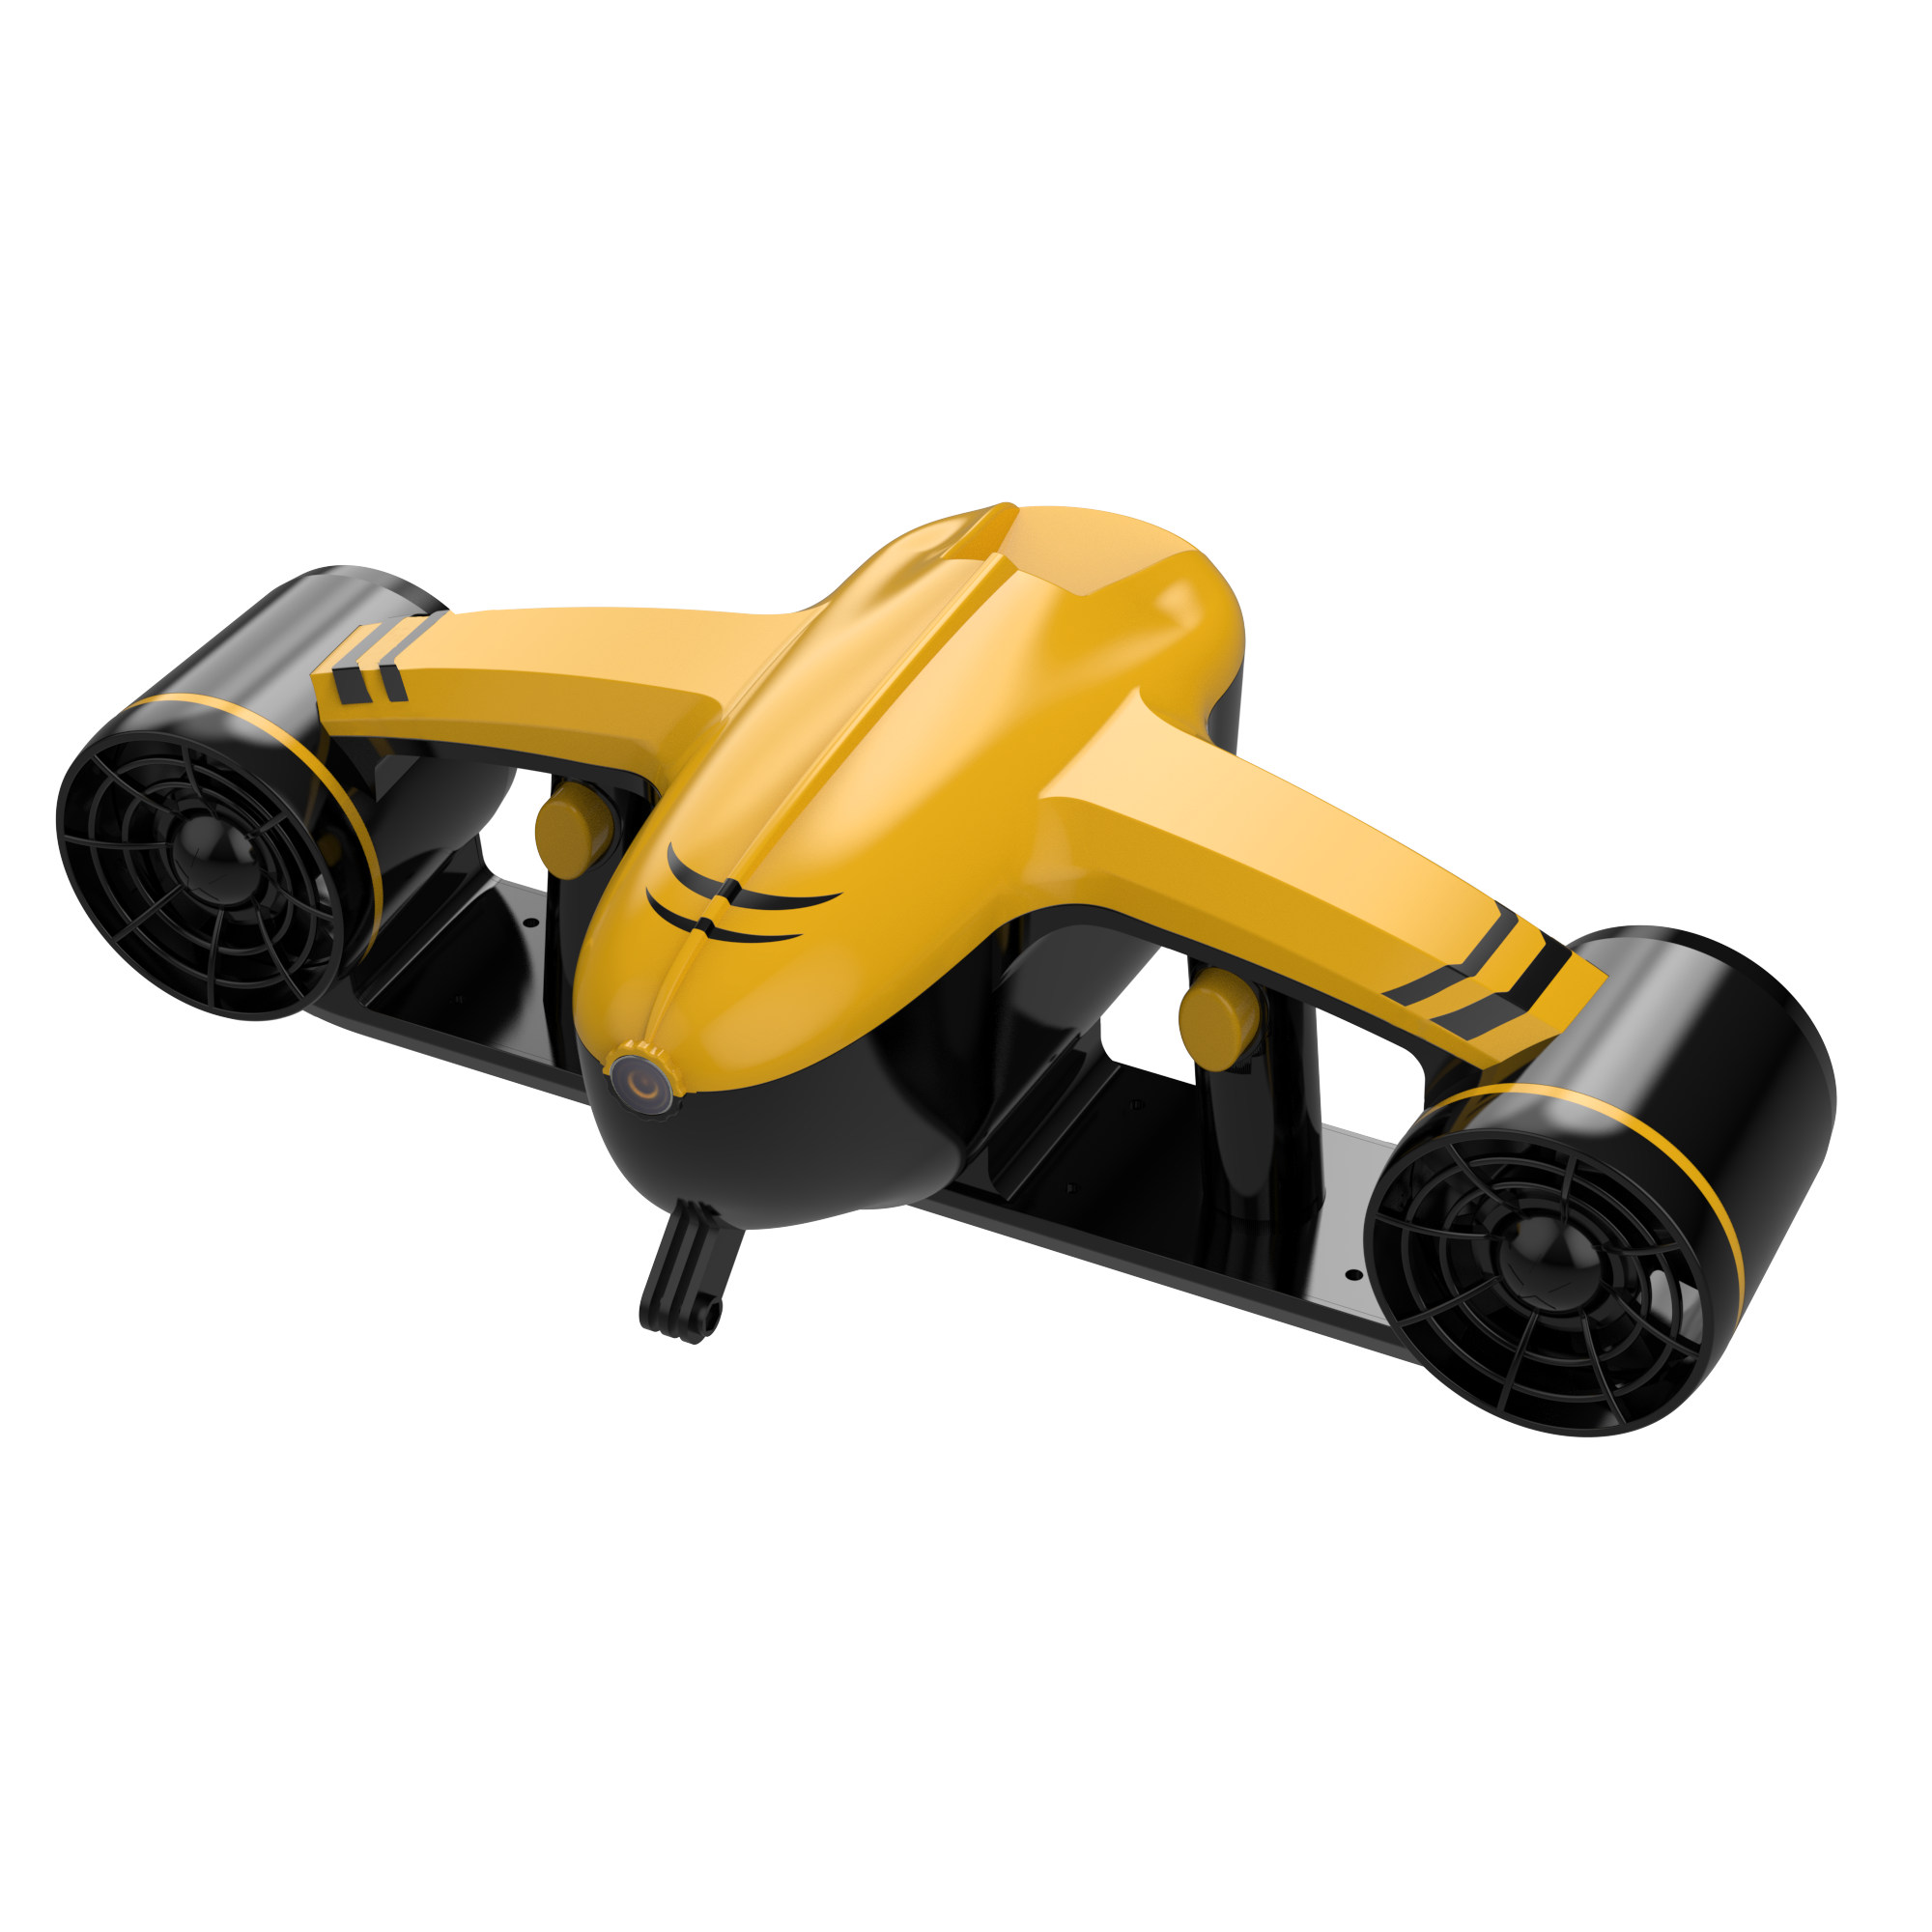 قدرة تحمل السكوتر تحت الماء لمدة ساعة واحدة مع حامل كاميرا الحركة - شاشة OLED ذات محرك مزدوج مقاومة للماء بحد أقصى 50 مترًا للغوص والسباحة